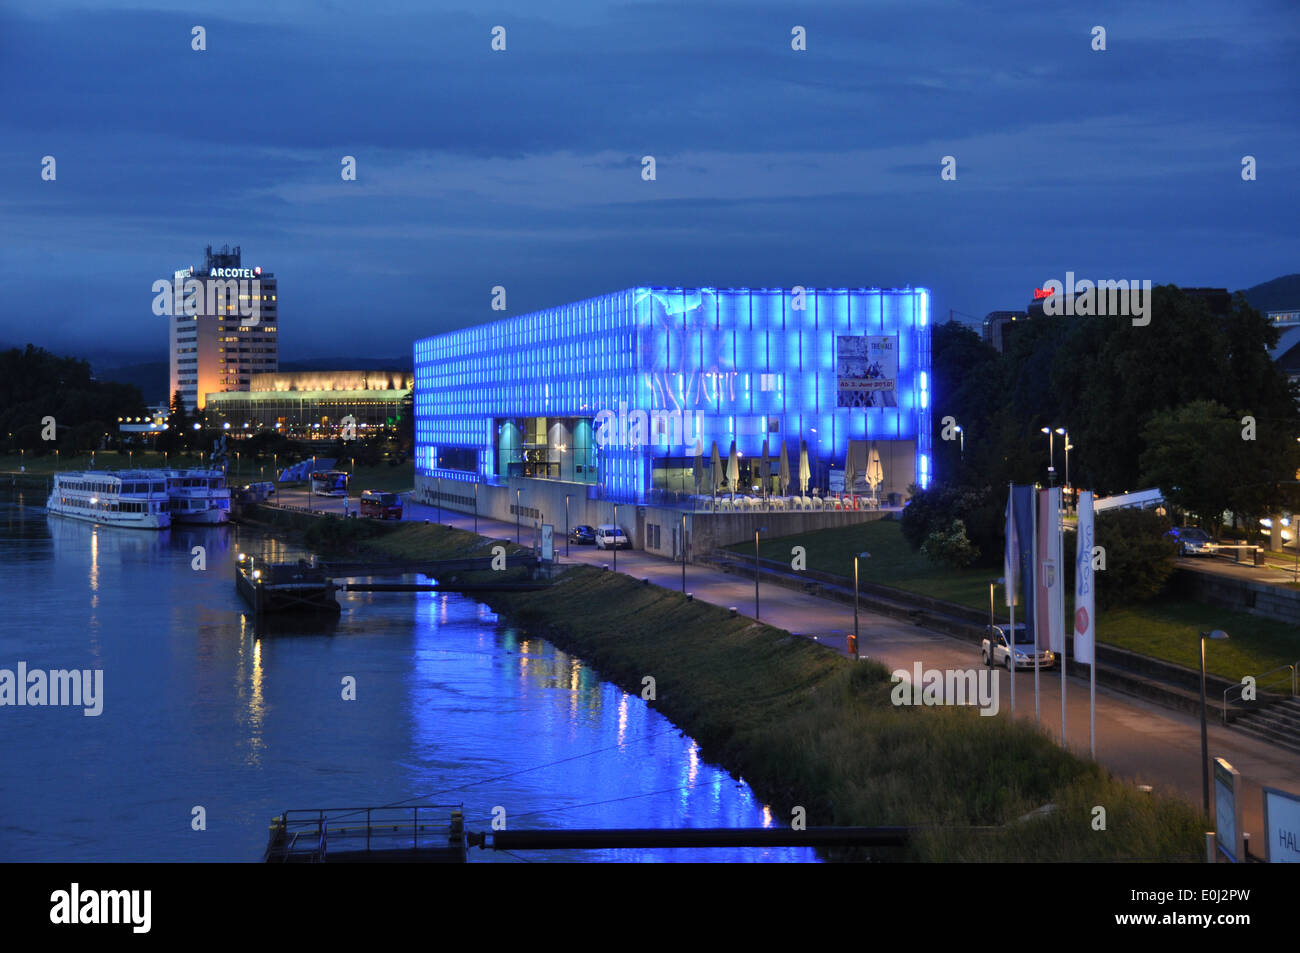 Il Lentos Art Museum, situata sul fiume Danubio, li fino a notte con illuminazione blu. Foto Stock